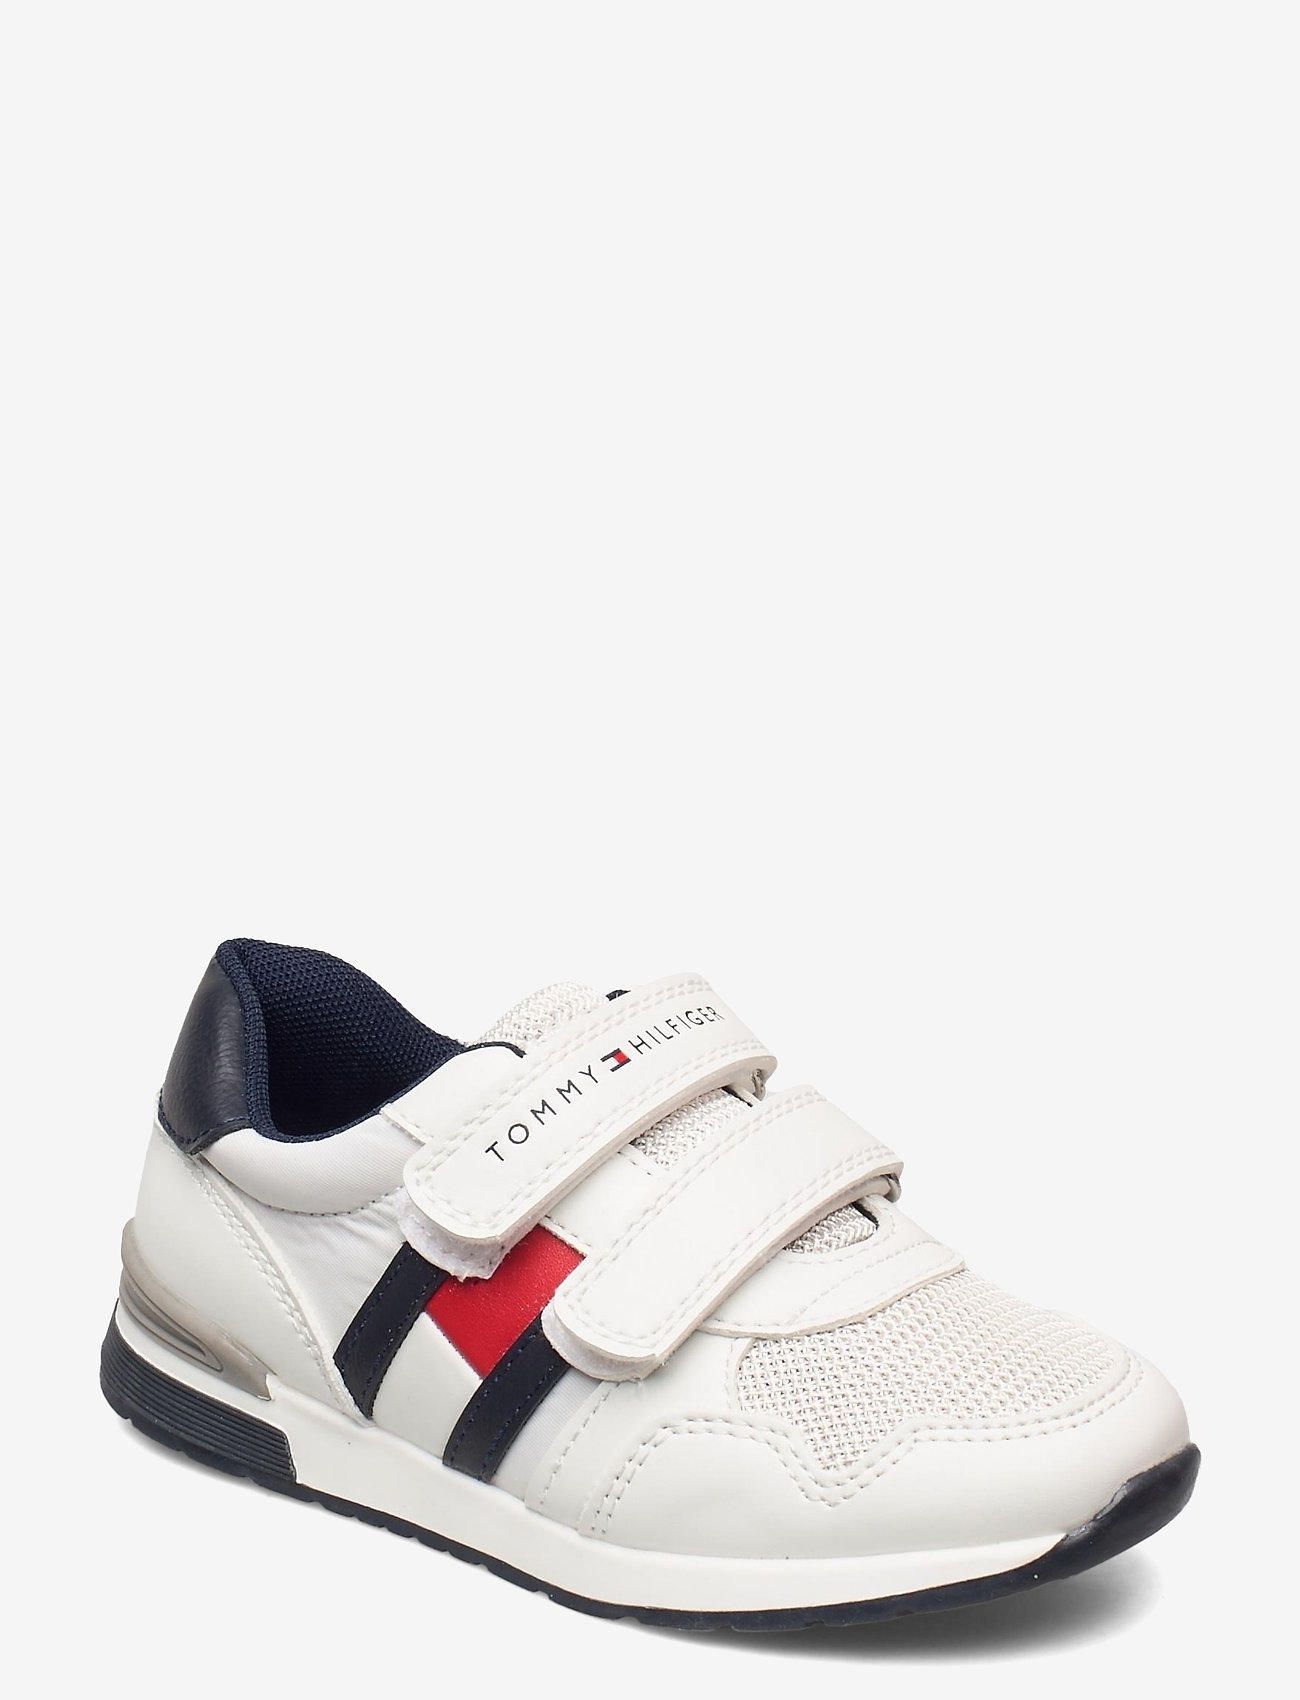 Low Cut Velcro Sneaker (White/blue) (48 